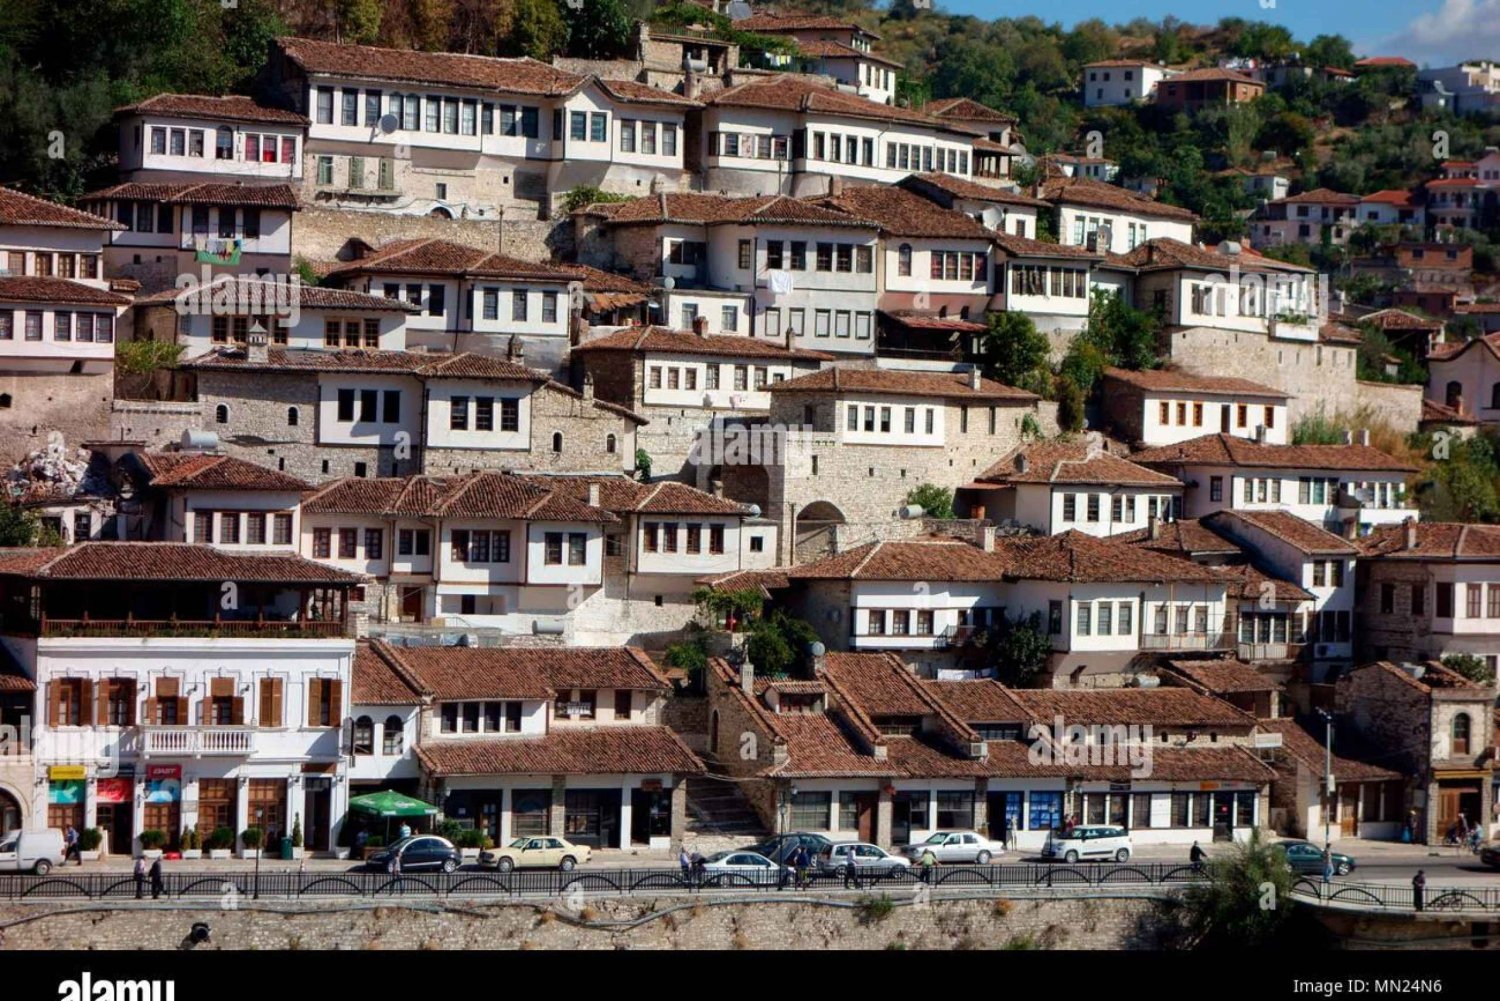 Descubra Belshi e Berat: Cidade das Maravilhas do Patrimônio da UNESCO